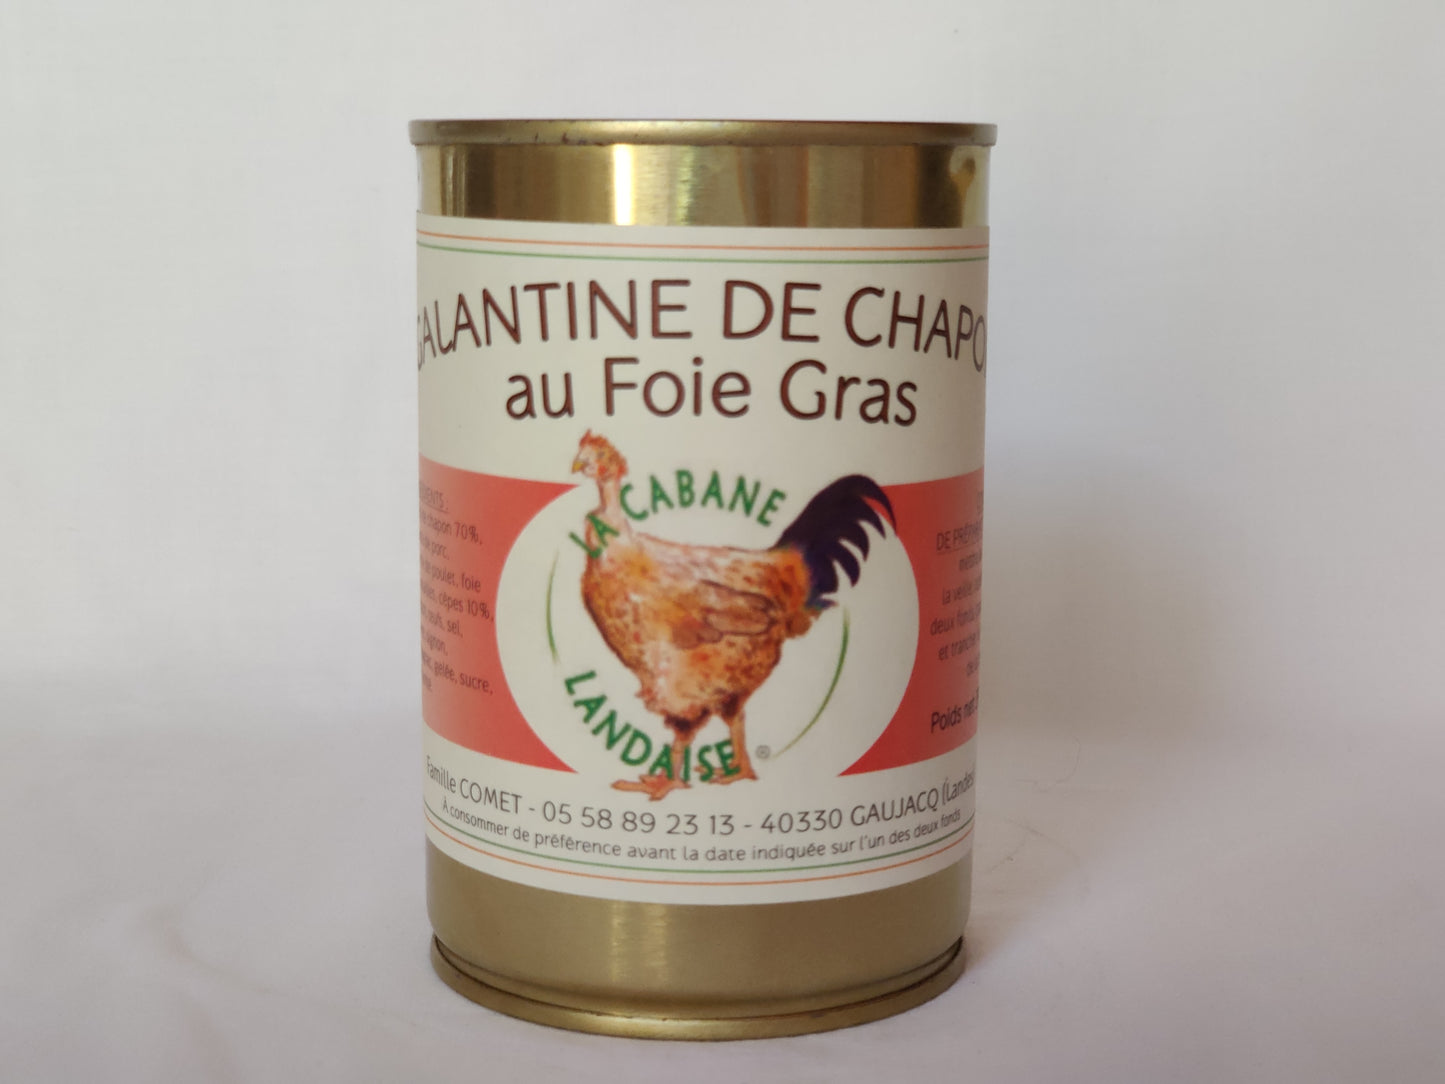 Galantine de chapon au foie gras